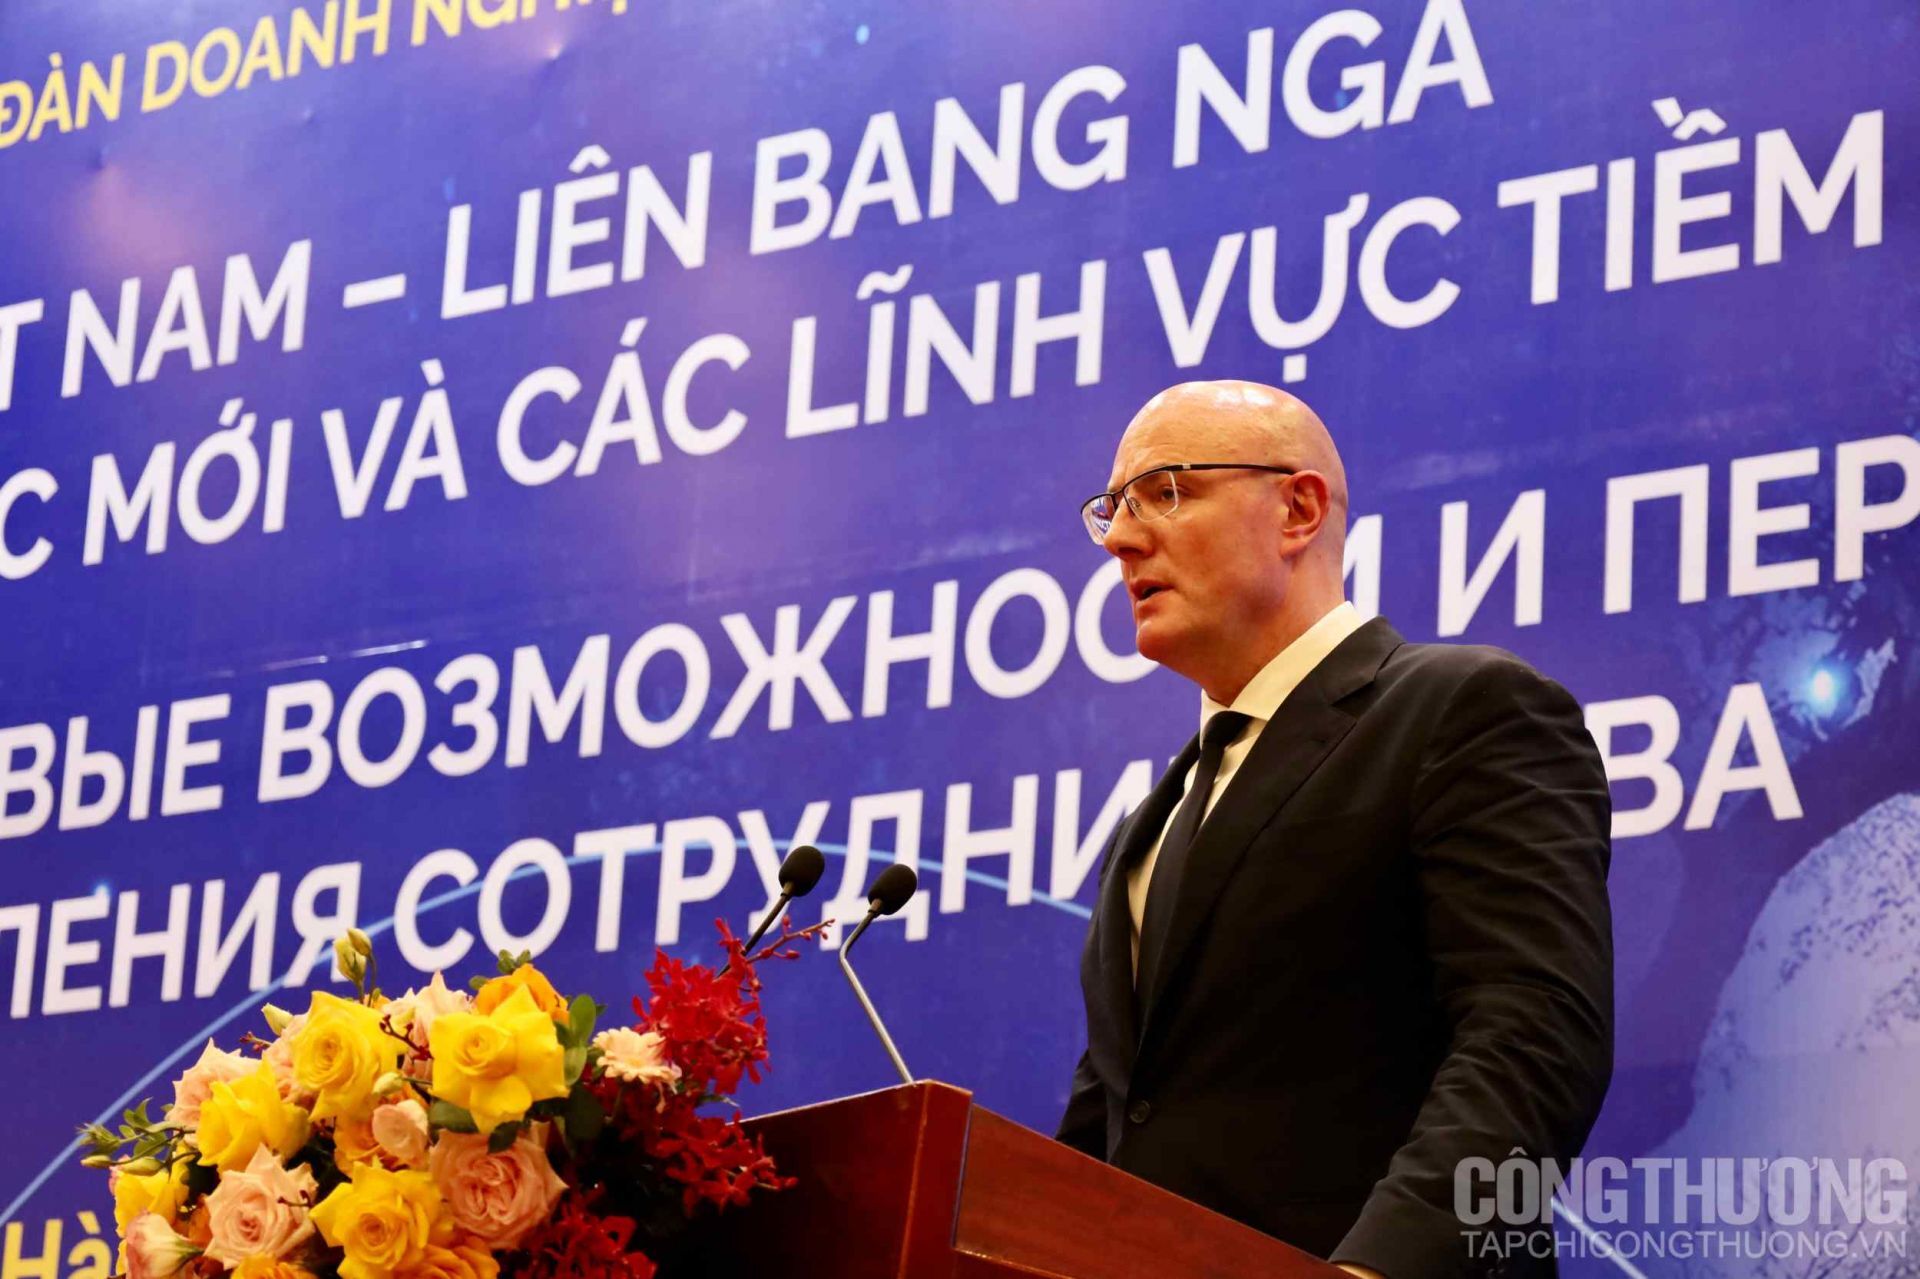 Diễn đàn thu hút hơn 200 doanh nghiệp lớn của hai nước Việt Nam - Liên bang Nga tham gia